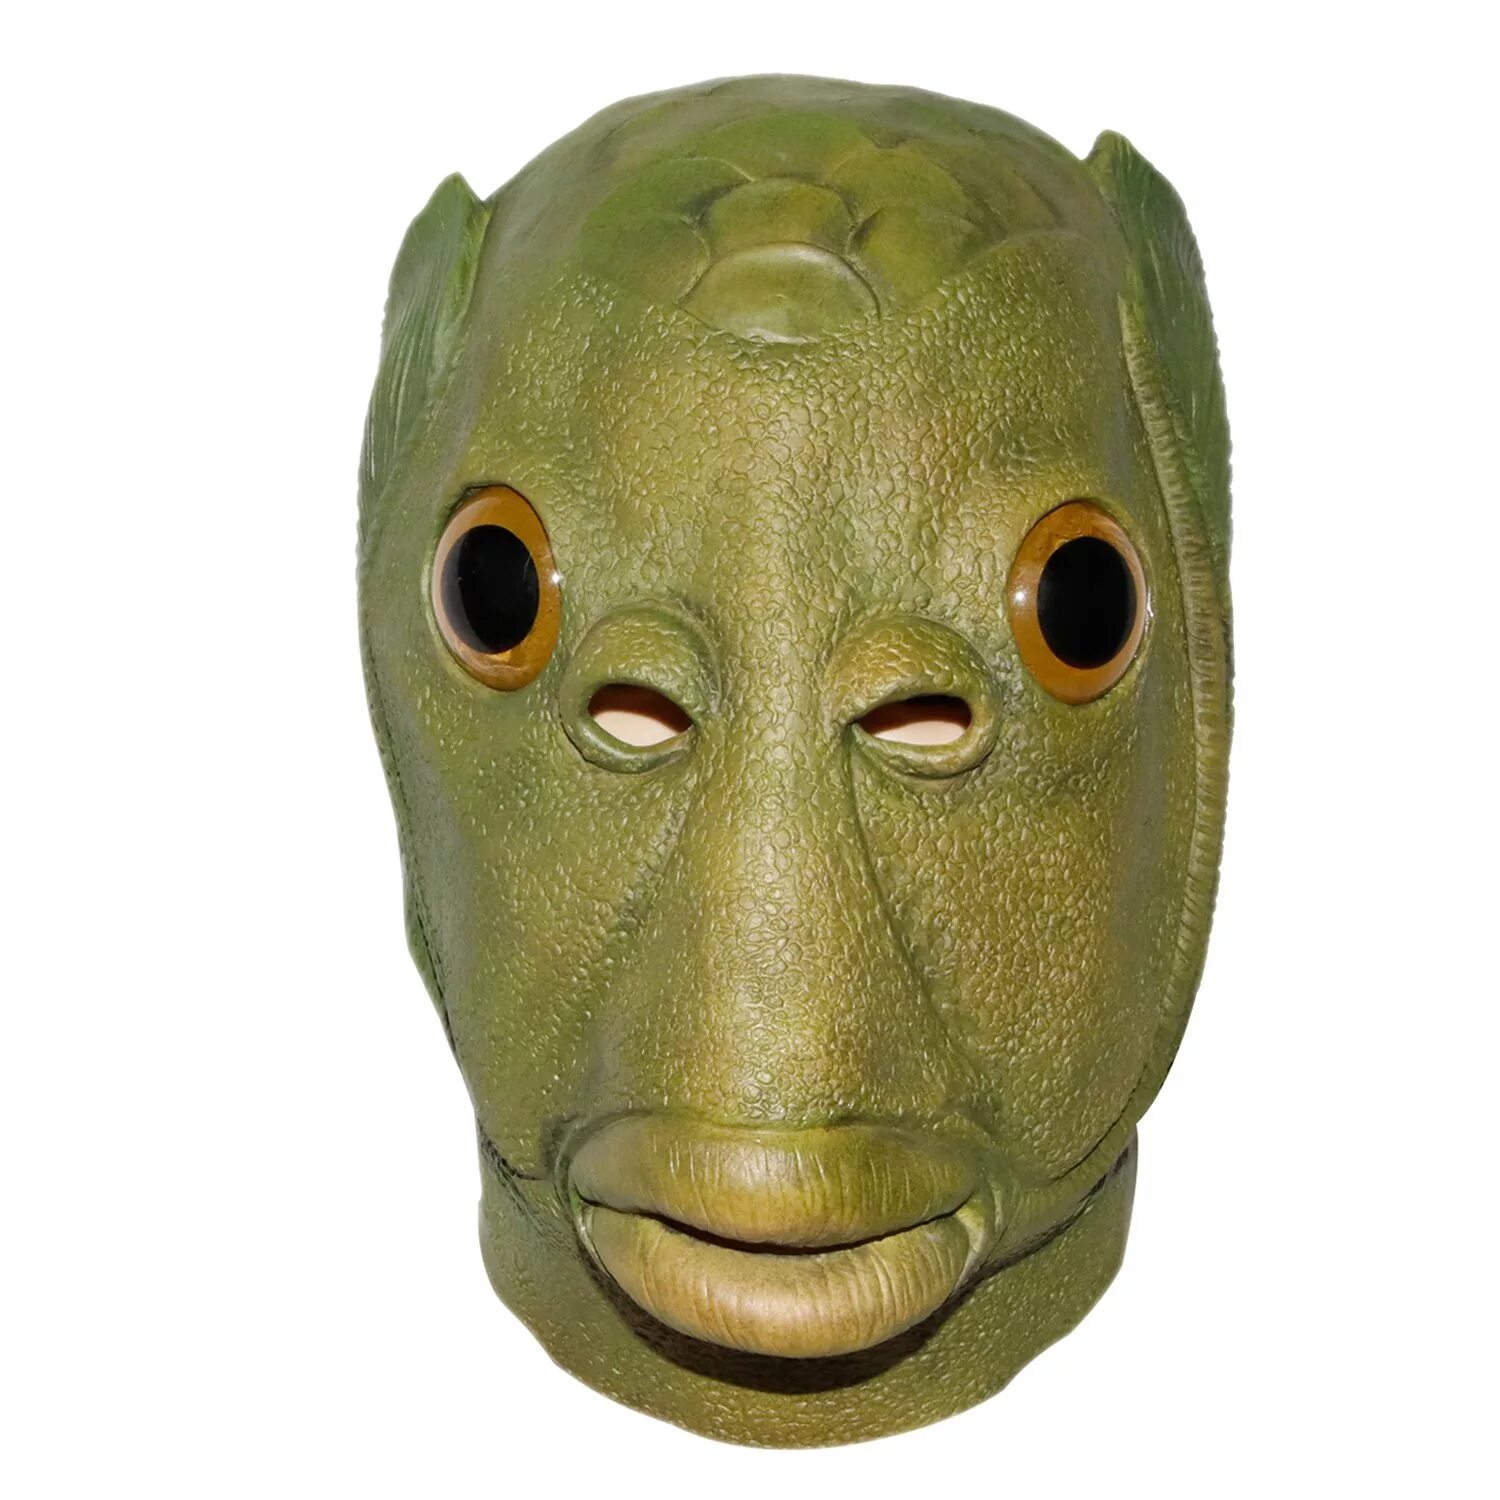 Маска над головой. Маска зелёной рыбы. Зеленая резиновая маска.